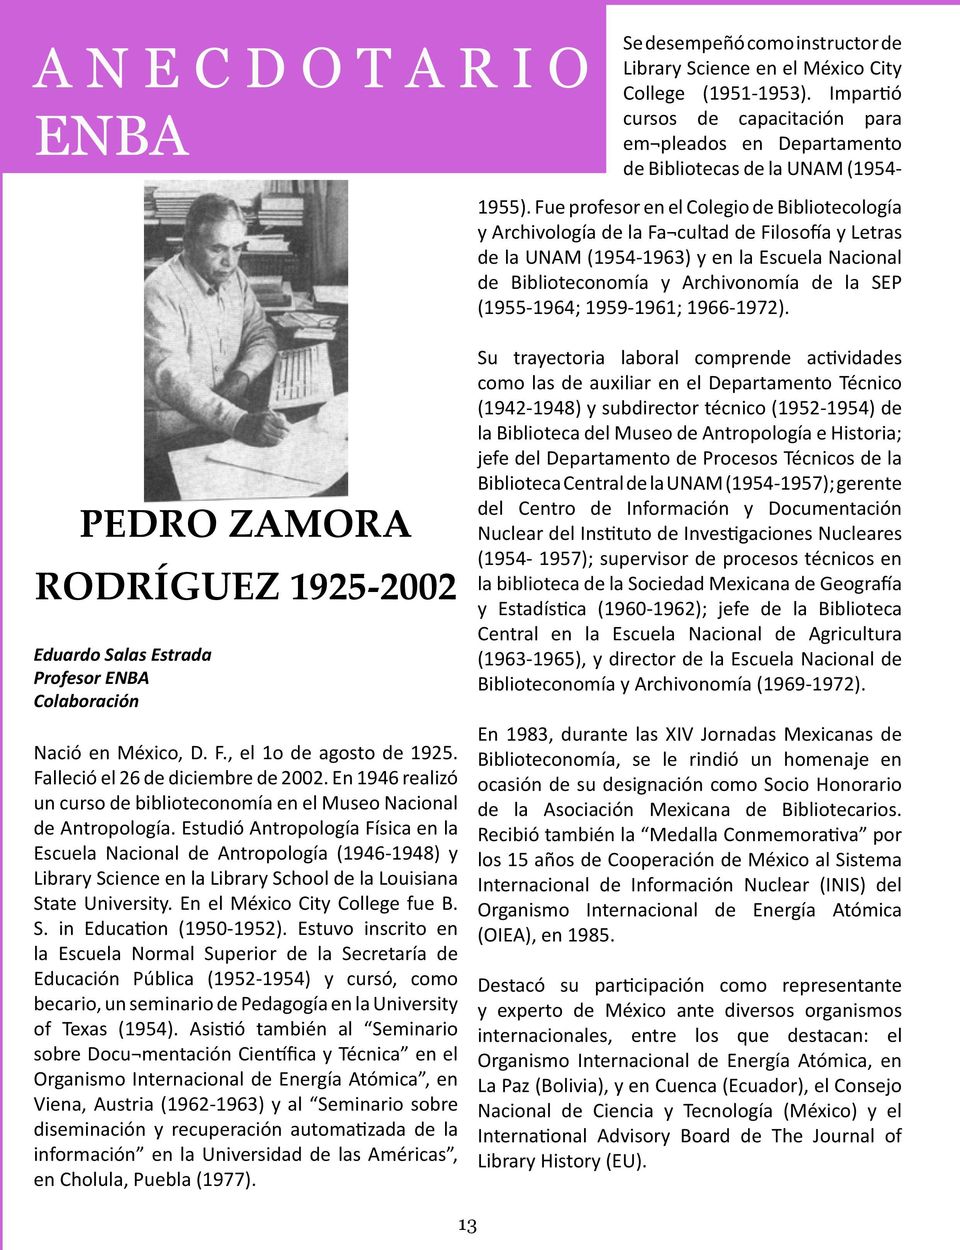 Fue profesor en el Colegio de Bibliotecología y Archivología de la Fa cultad de Filosofía y Letras de la UNAM (1954-1963) y en la Escuela Nacional de Biblioteconomía y Archivonomía de la SEP